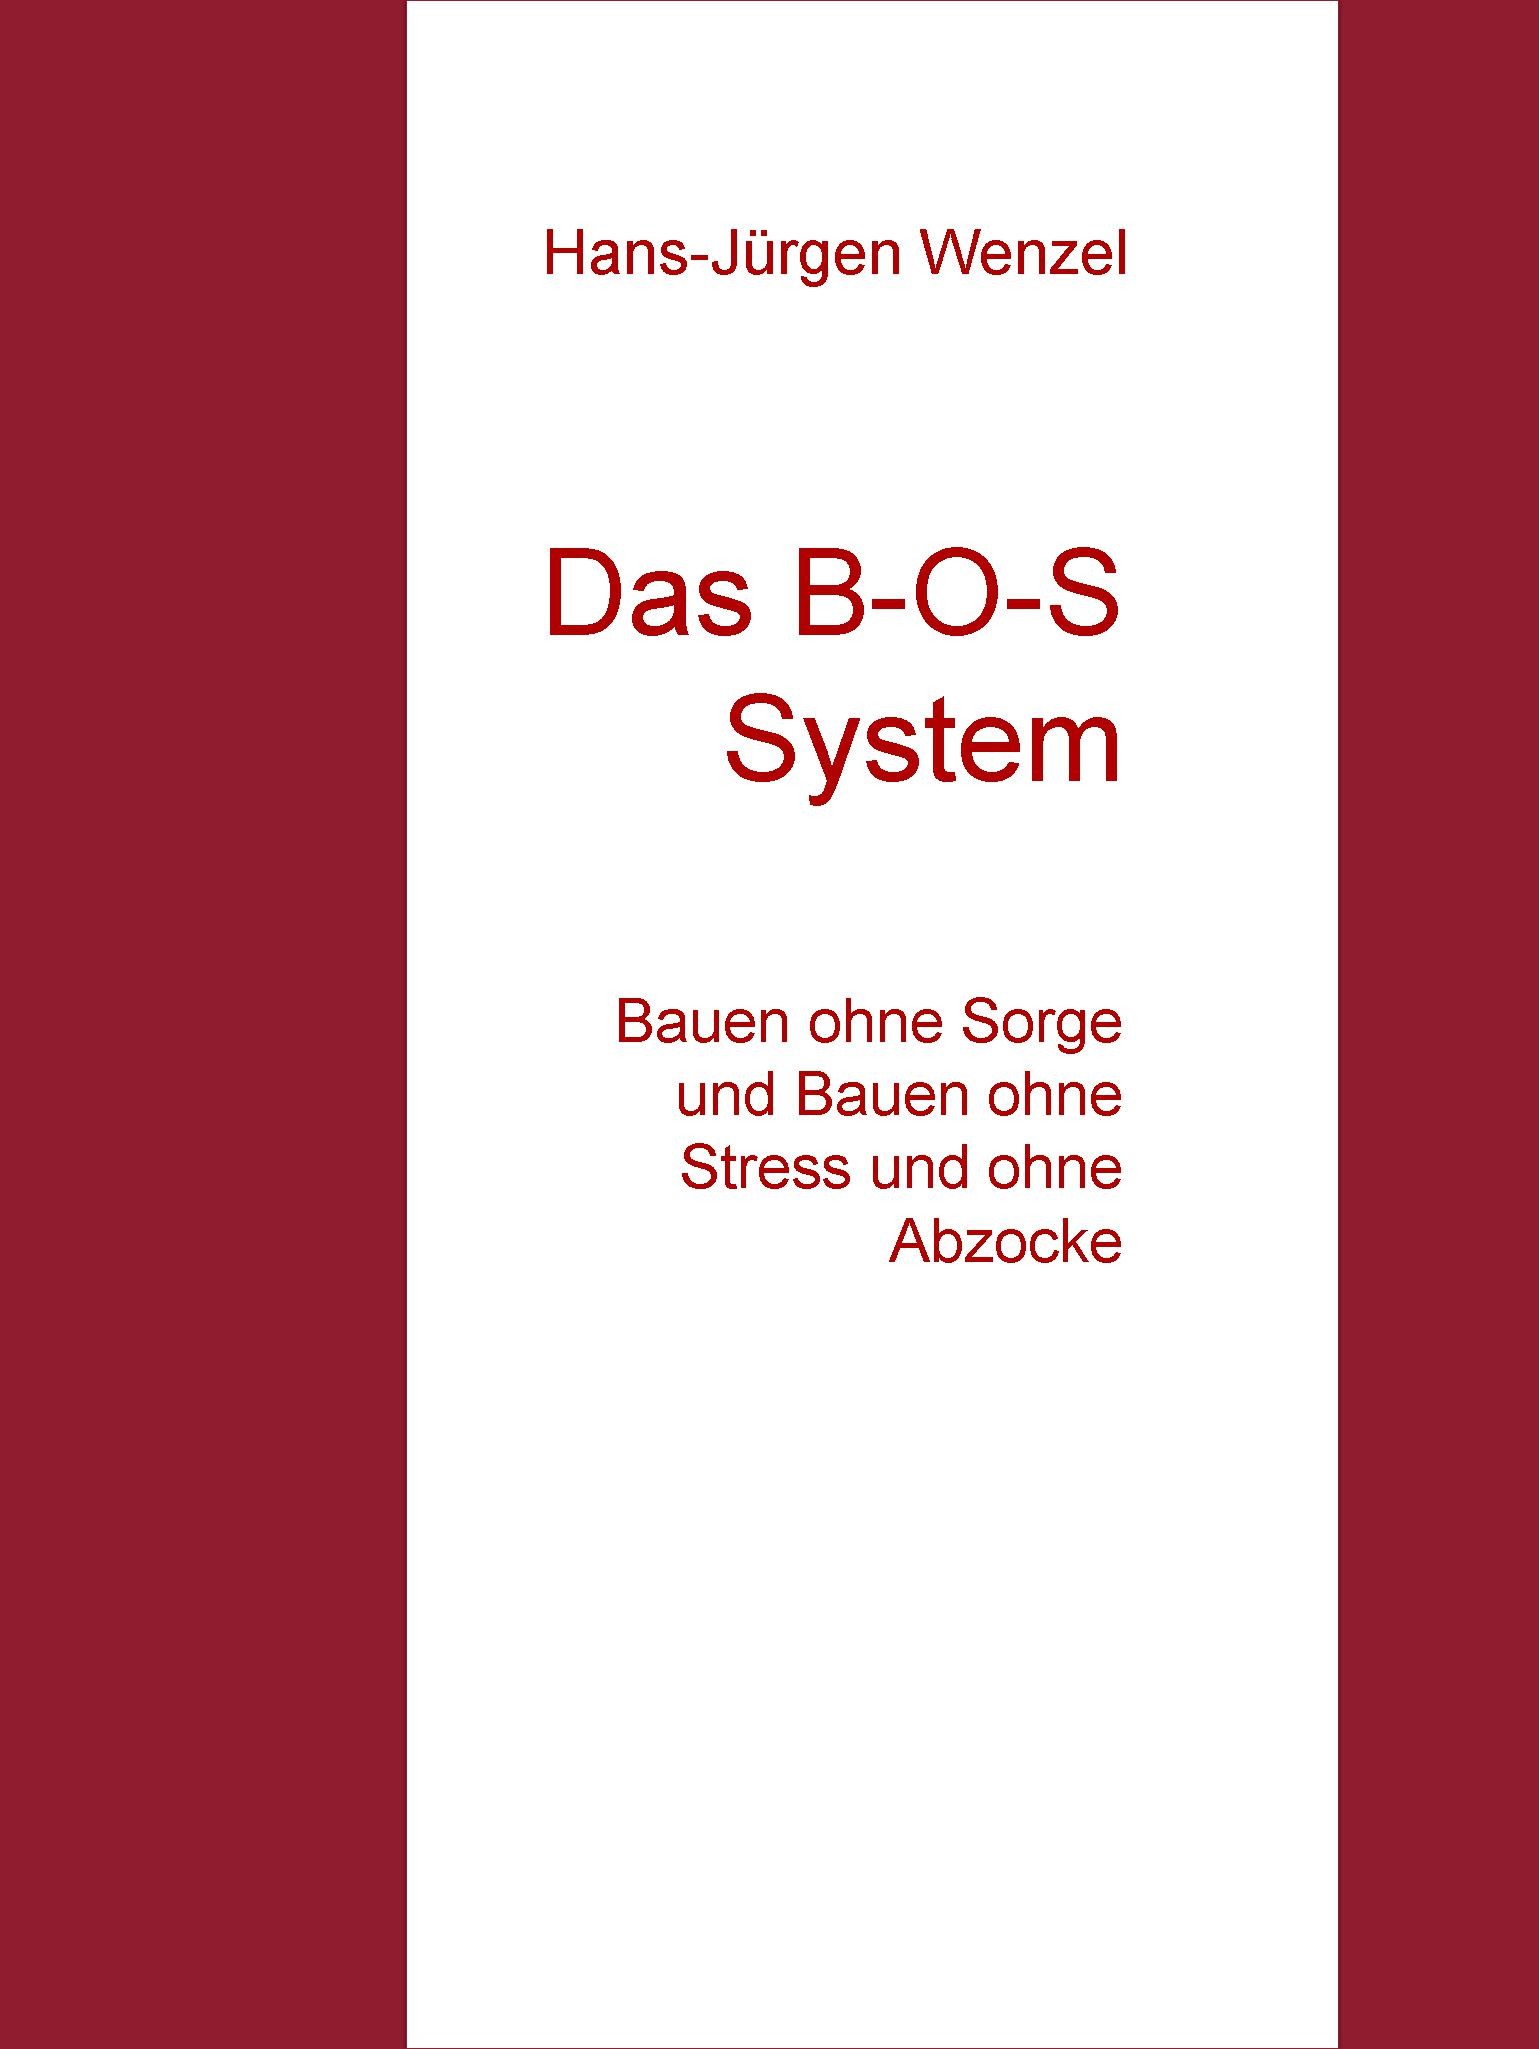 Das B-O-S System